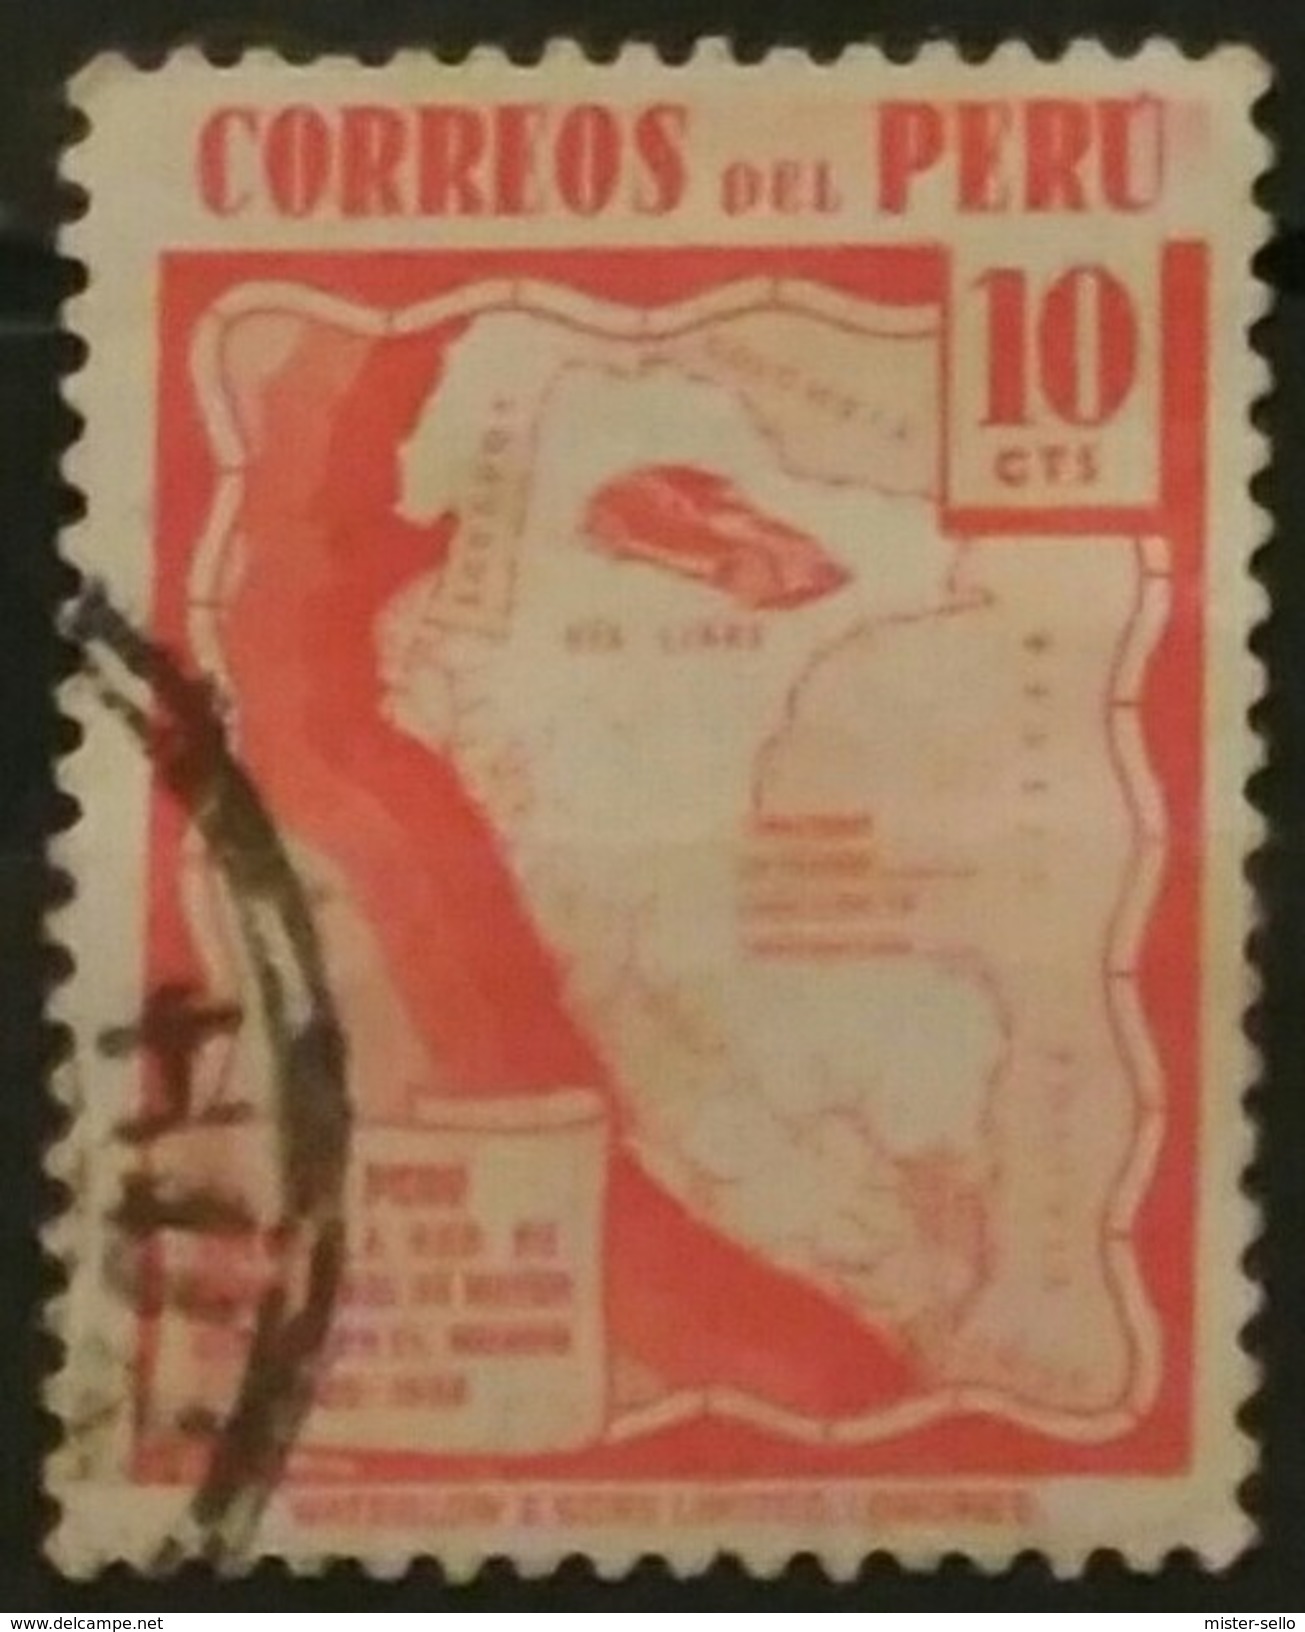 PERÚ 1938 Serie De Uso Corriente. USADOS - USED. - Perú